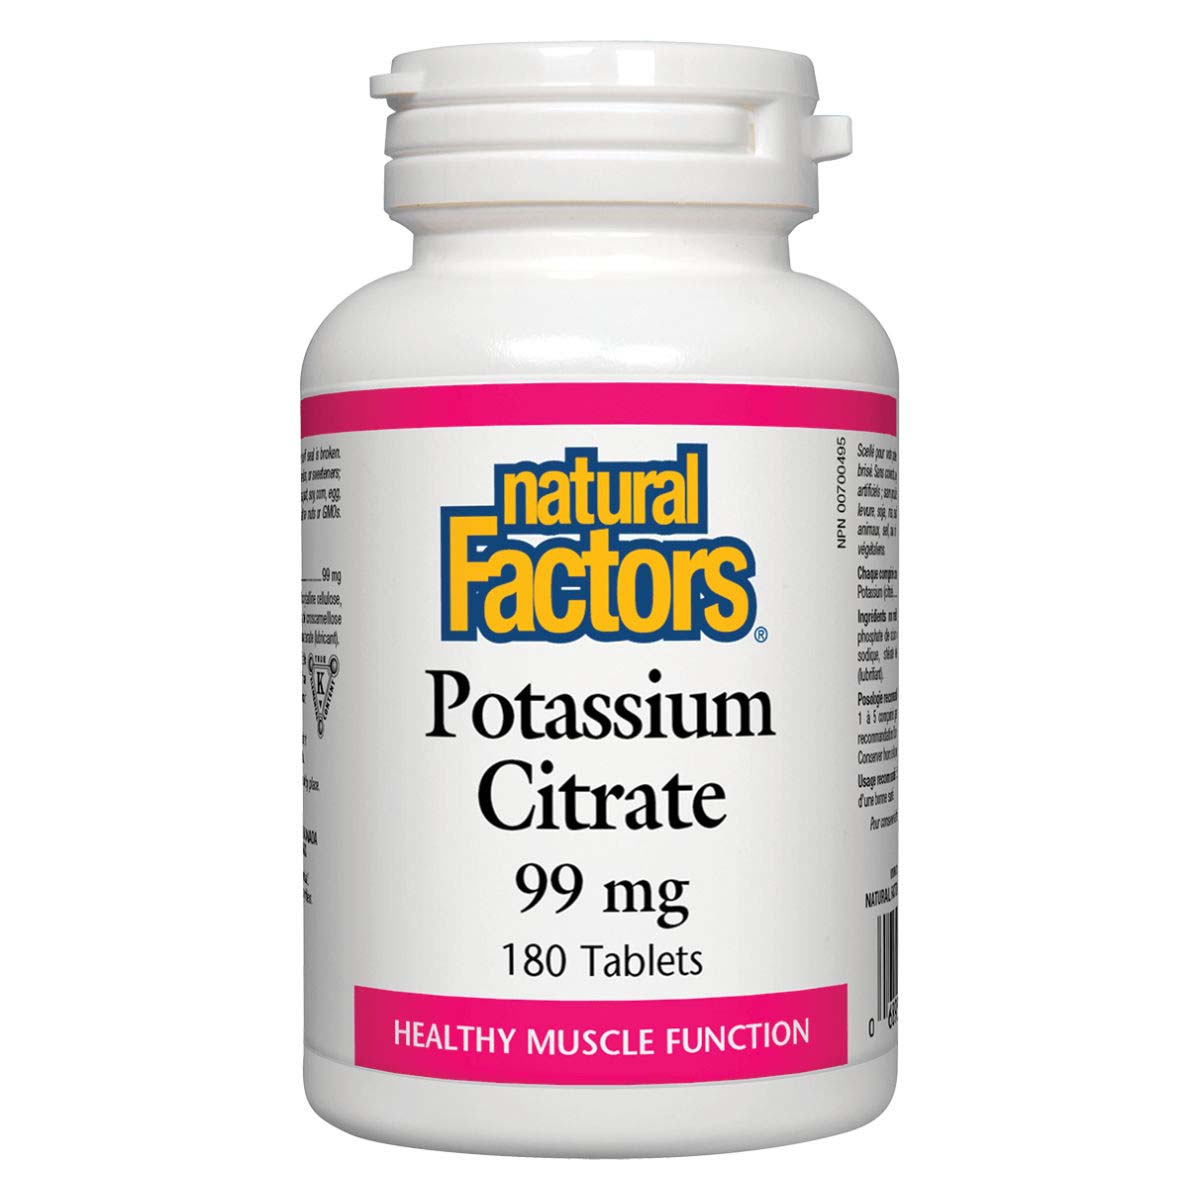 Natural Factors Potassium Citrate, 99 mg, 180 Tablets